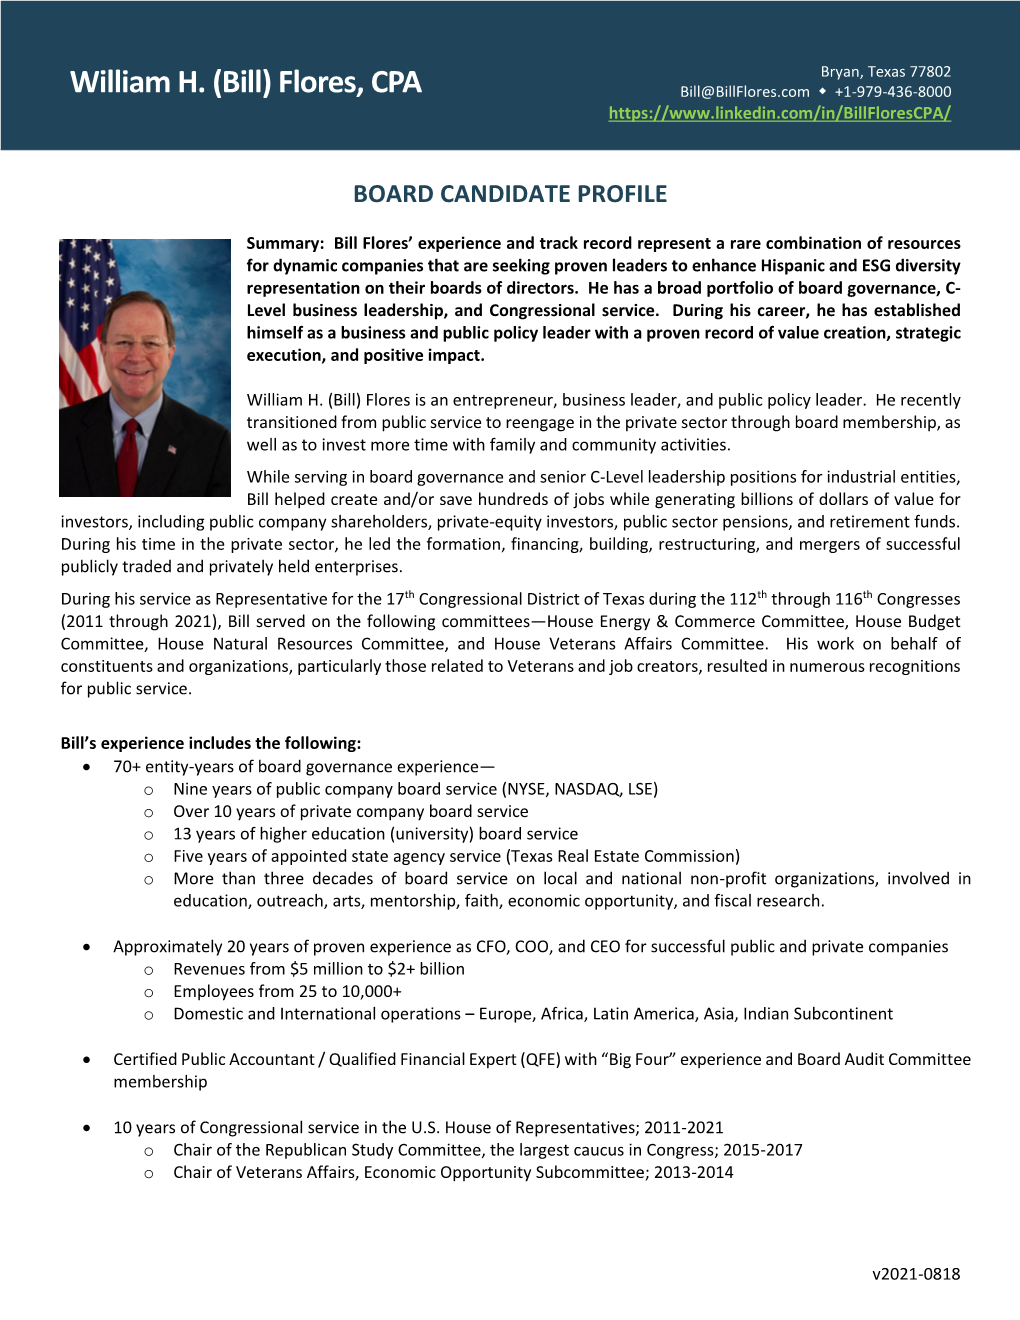 Board Candidate Profile